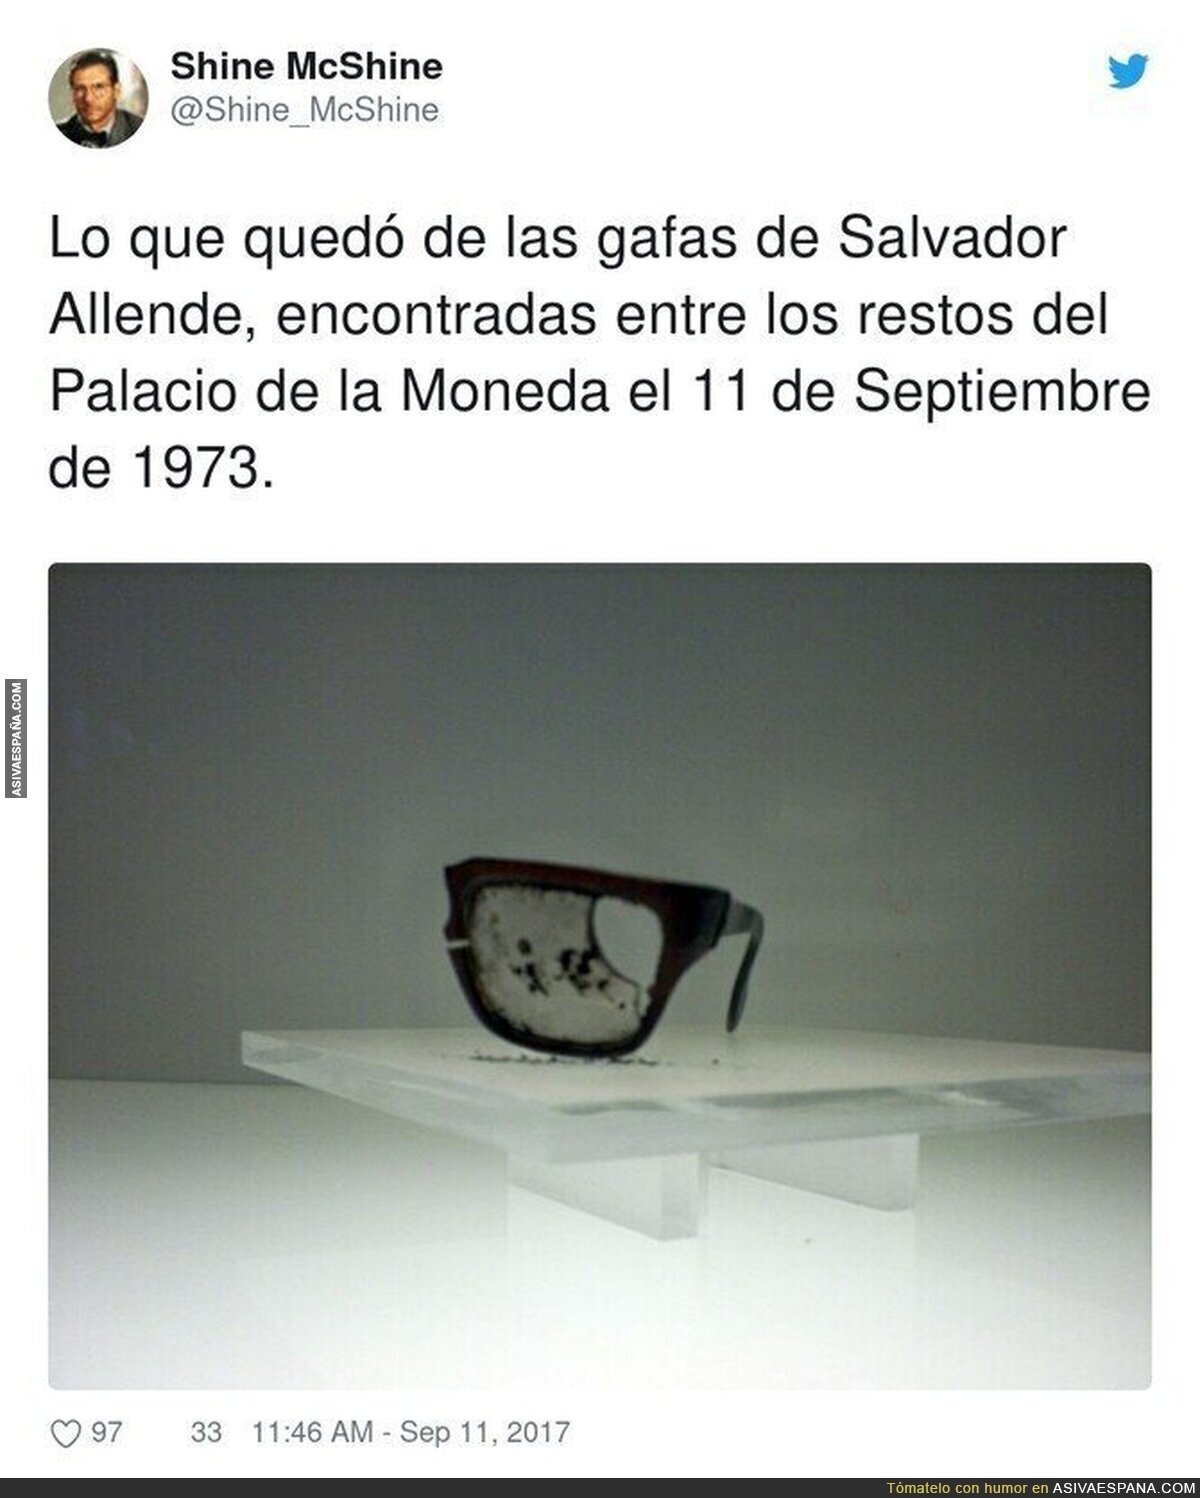 Imagen demoledora de Salvador Allende